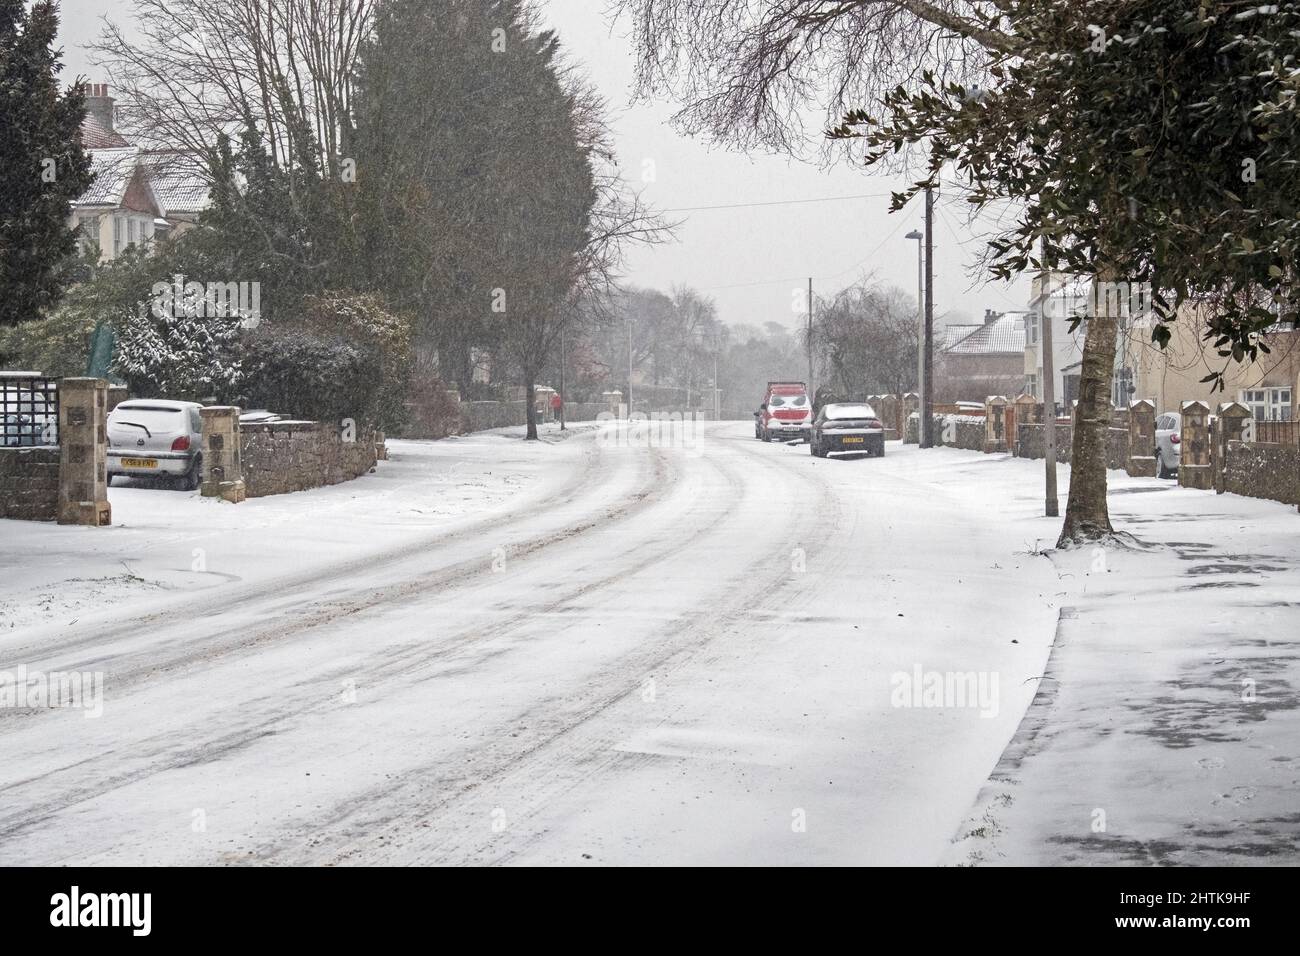 Nieve cayendo en una carretera desierta en Weston-super-Mare, Reino Unido, el 1 de marzo de 2018, durante la tormenta llamada “La Bestia del Este” Foto de stock